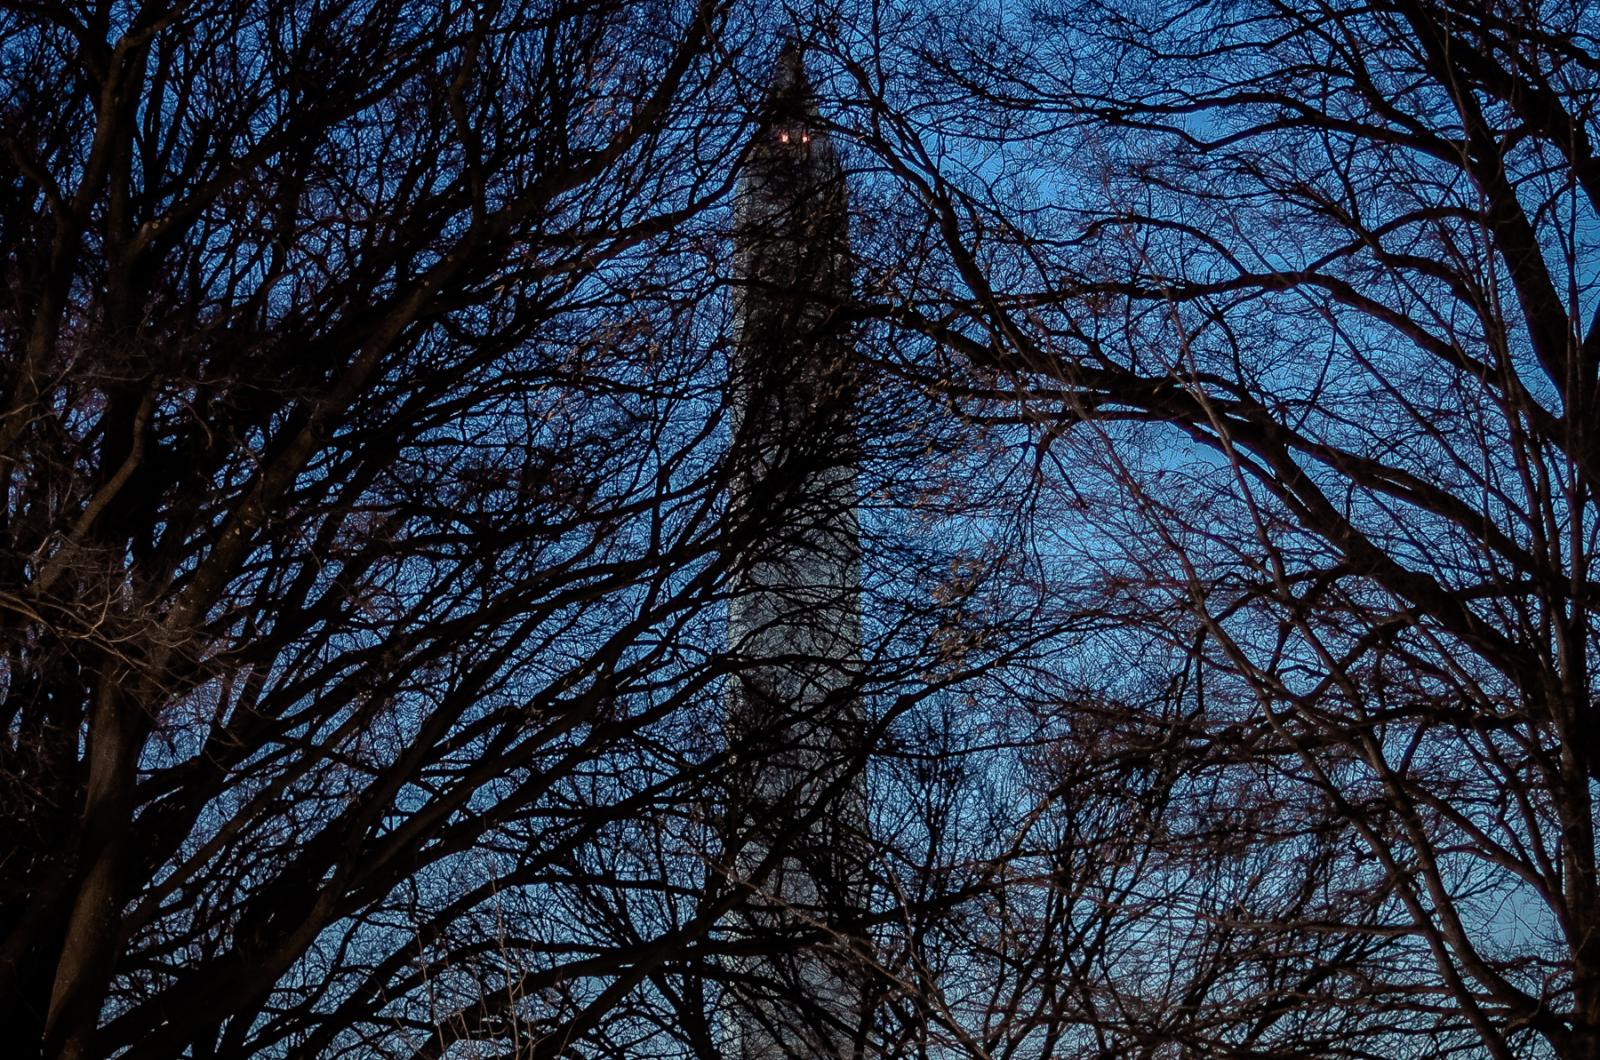 Image from Aesthetic - Washington Monument.